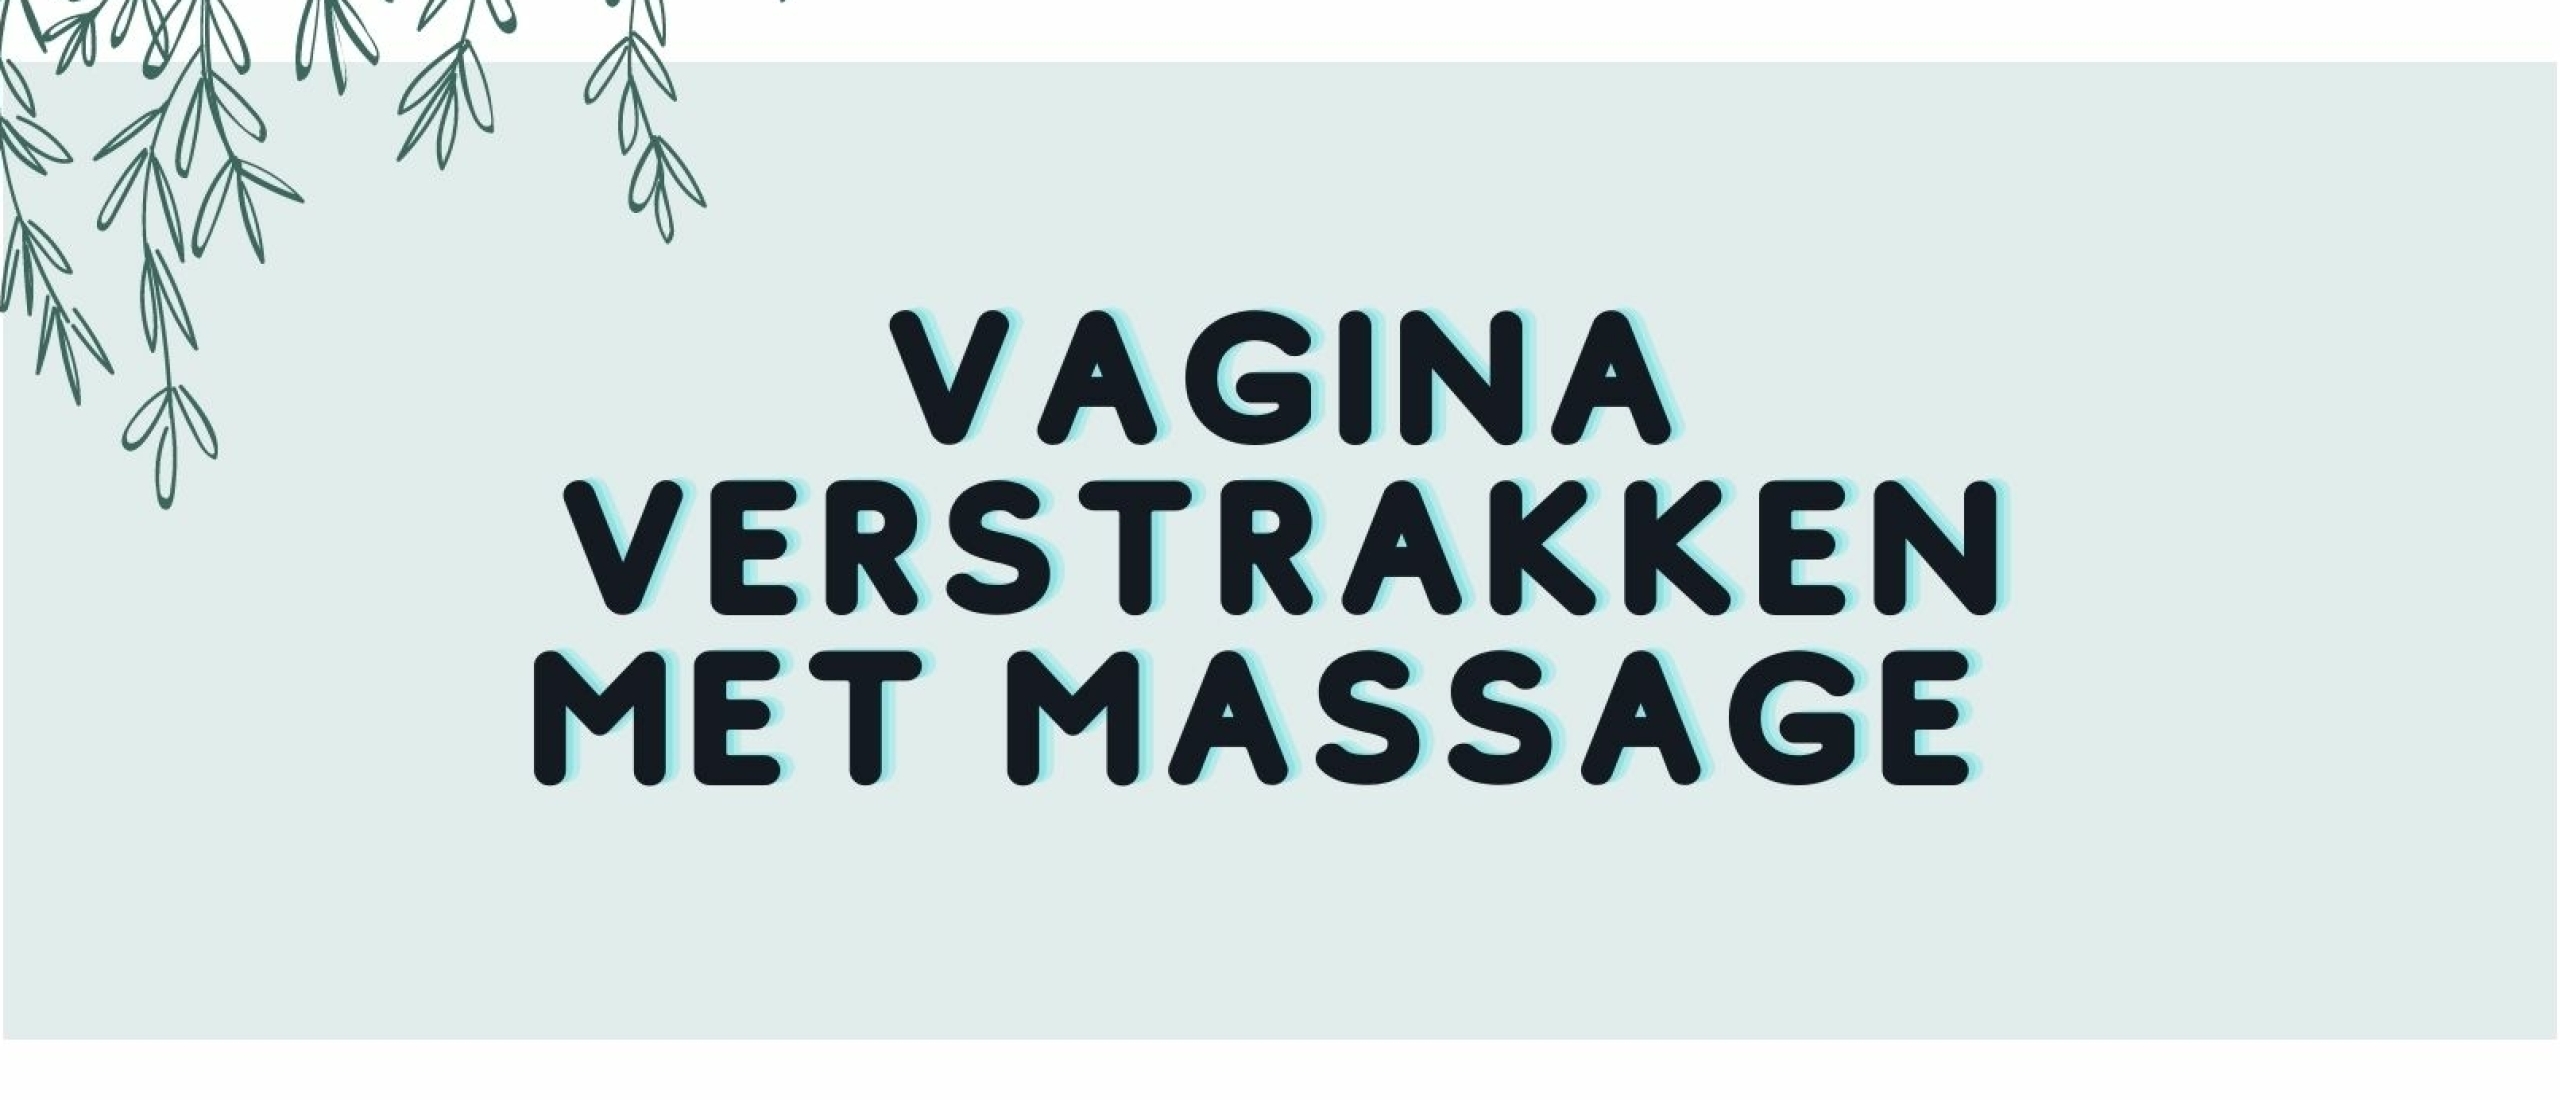 Hoe kan je vagina verstrakken door middel van massage?